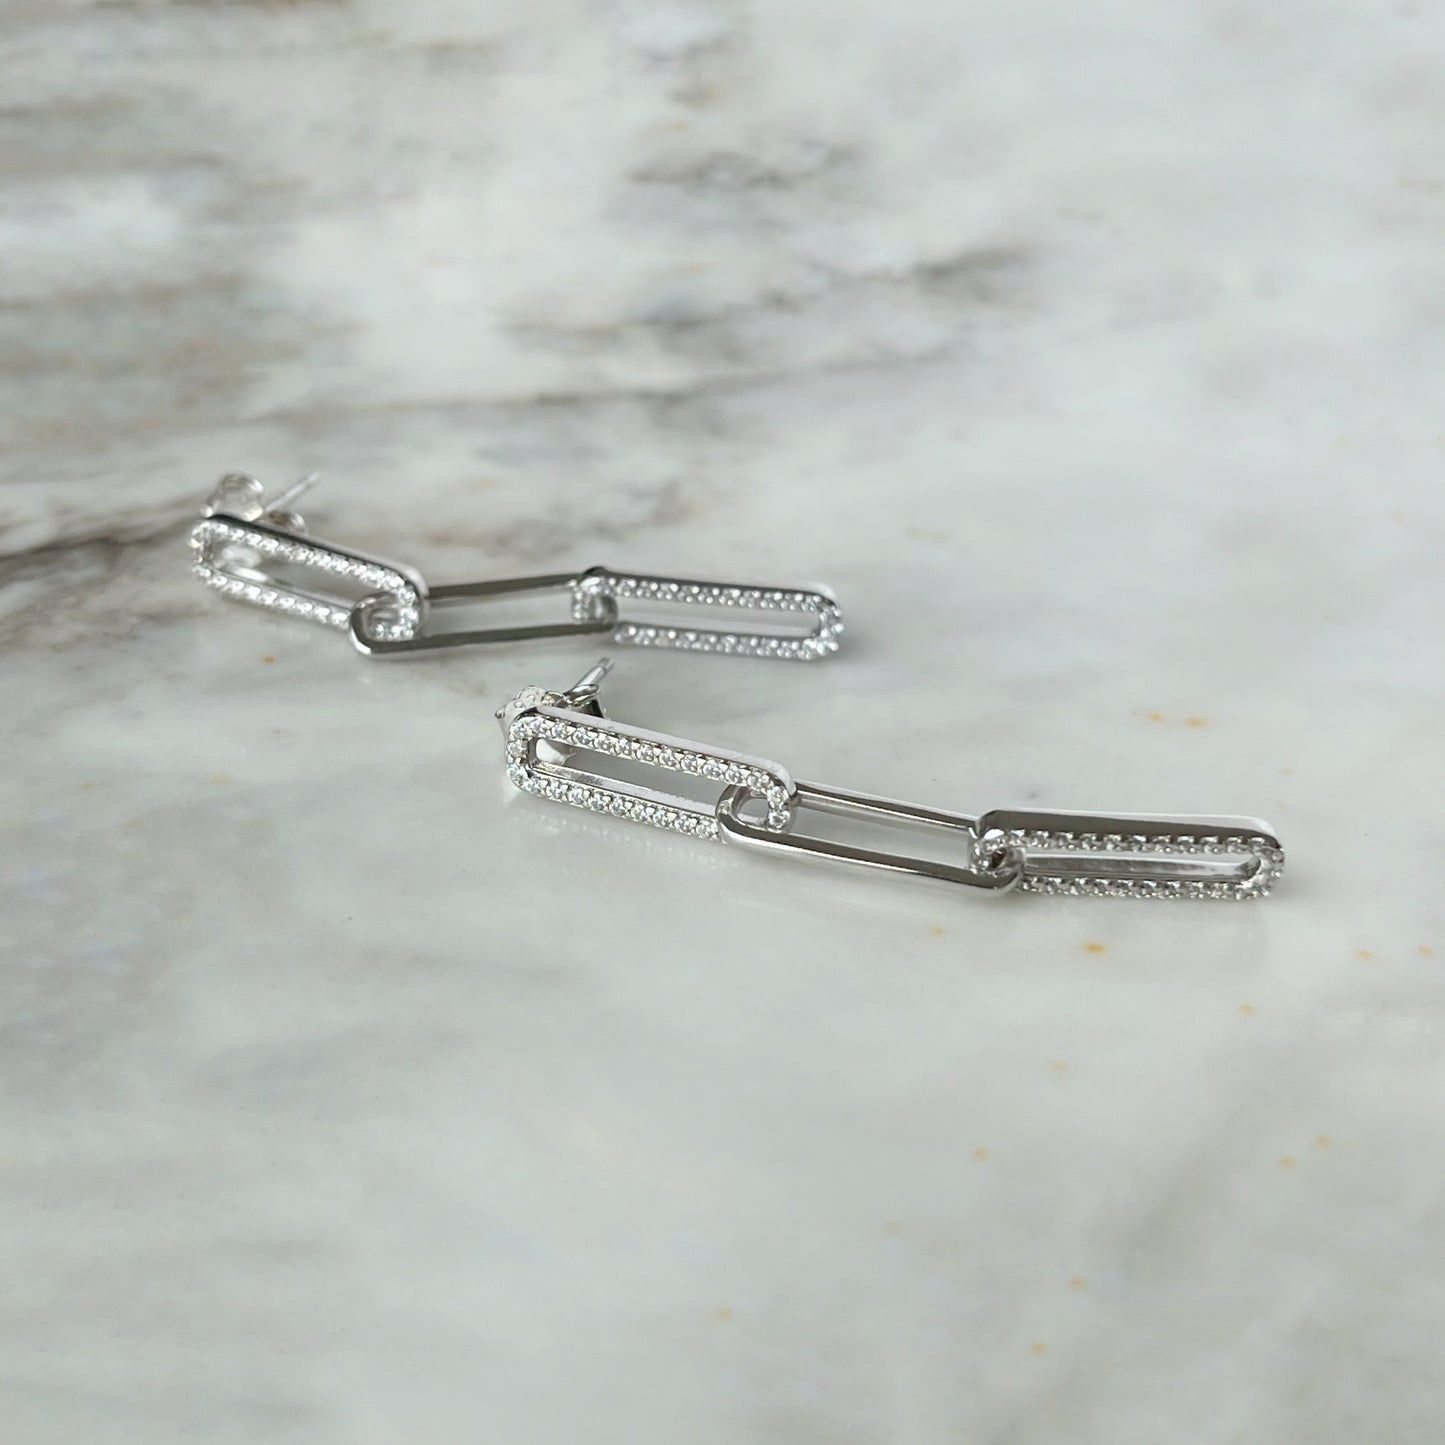 Arete largo paper clip de plata con baño platino y circonitas blancas